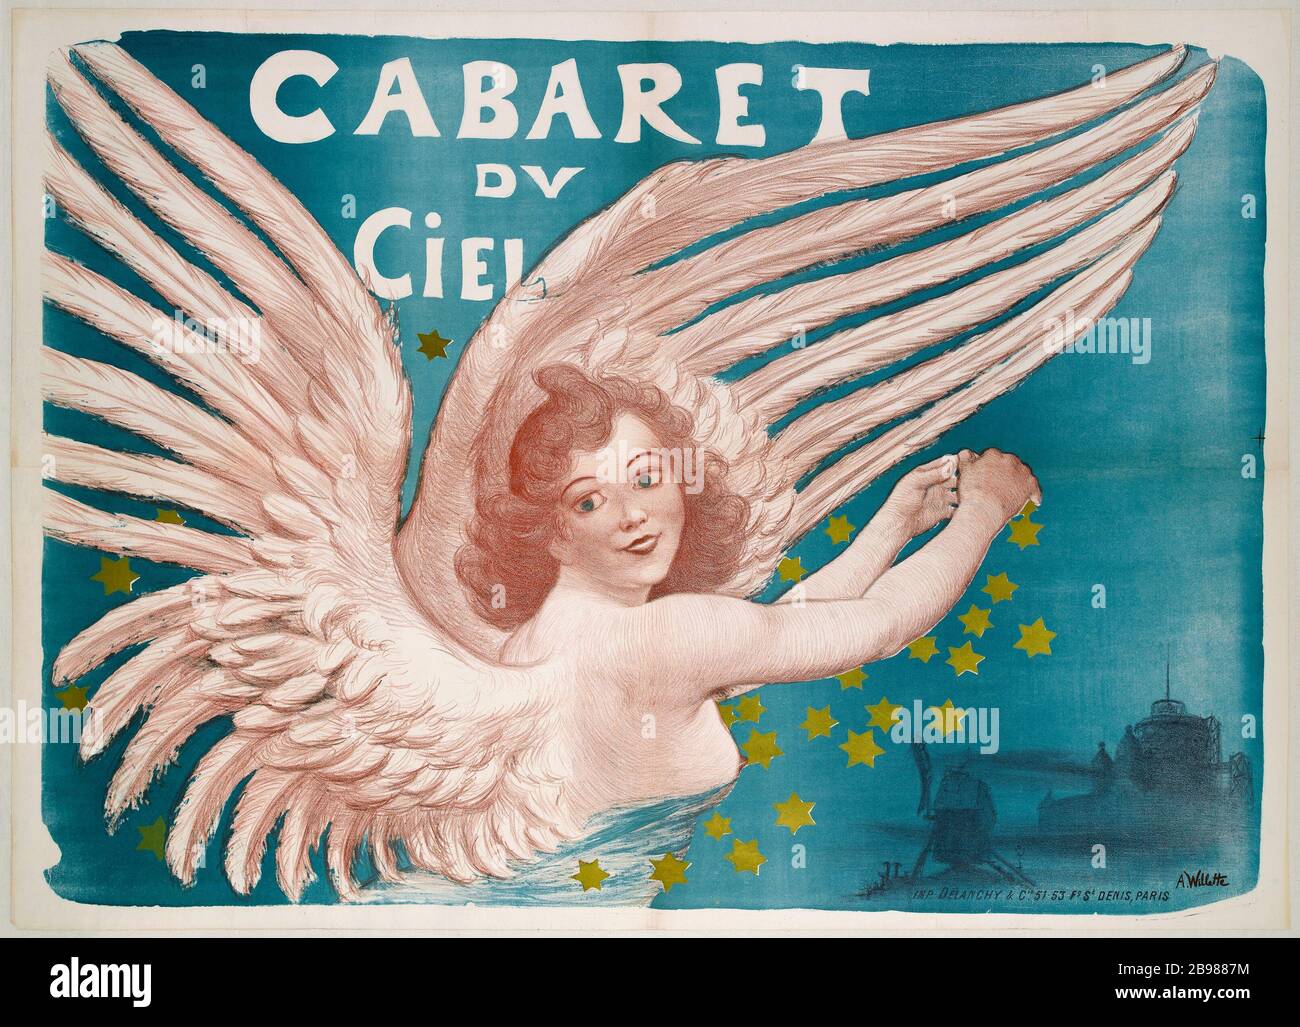 CABARET DEL PARADISO Adolphe Willette. 'Cabaret du Ciel'. Lithographie, 1880-1900. Parigi, musée Carnavalet. Foto Stock